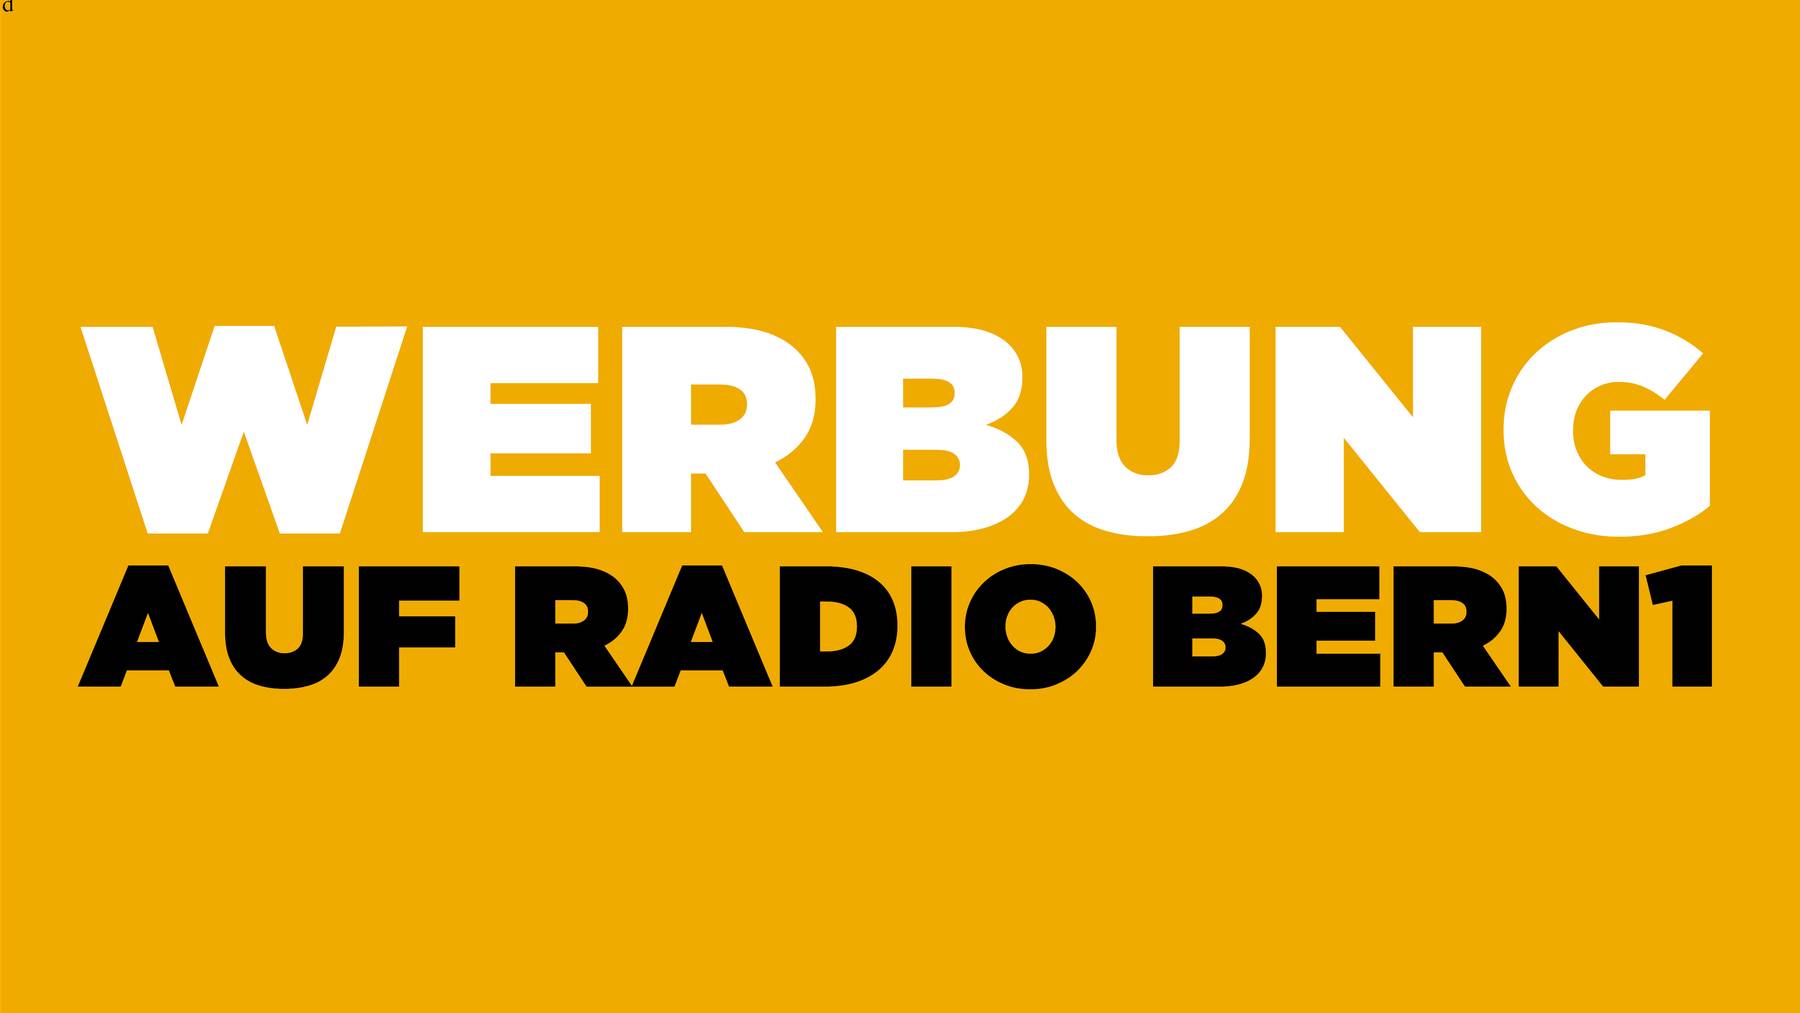 Werbung auf RADIO BERN1